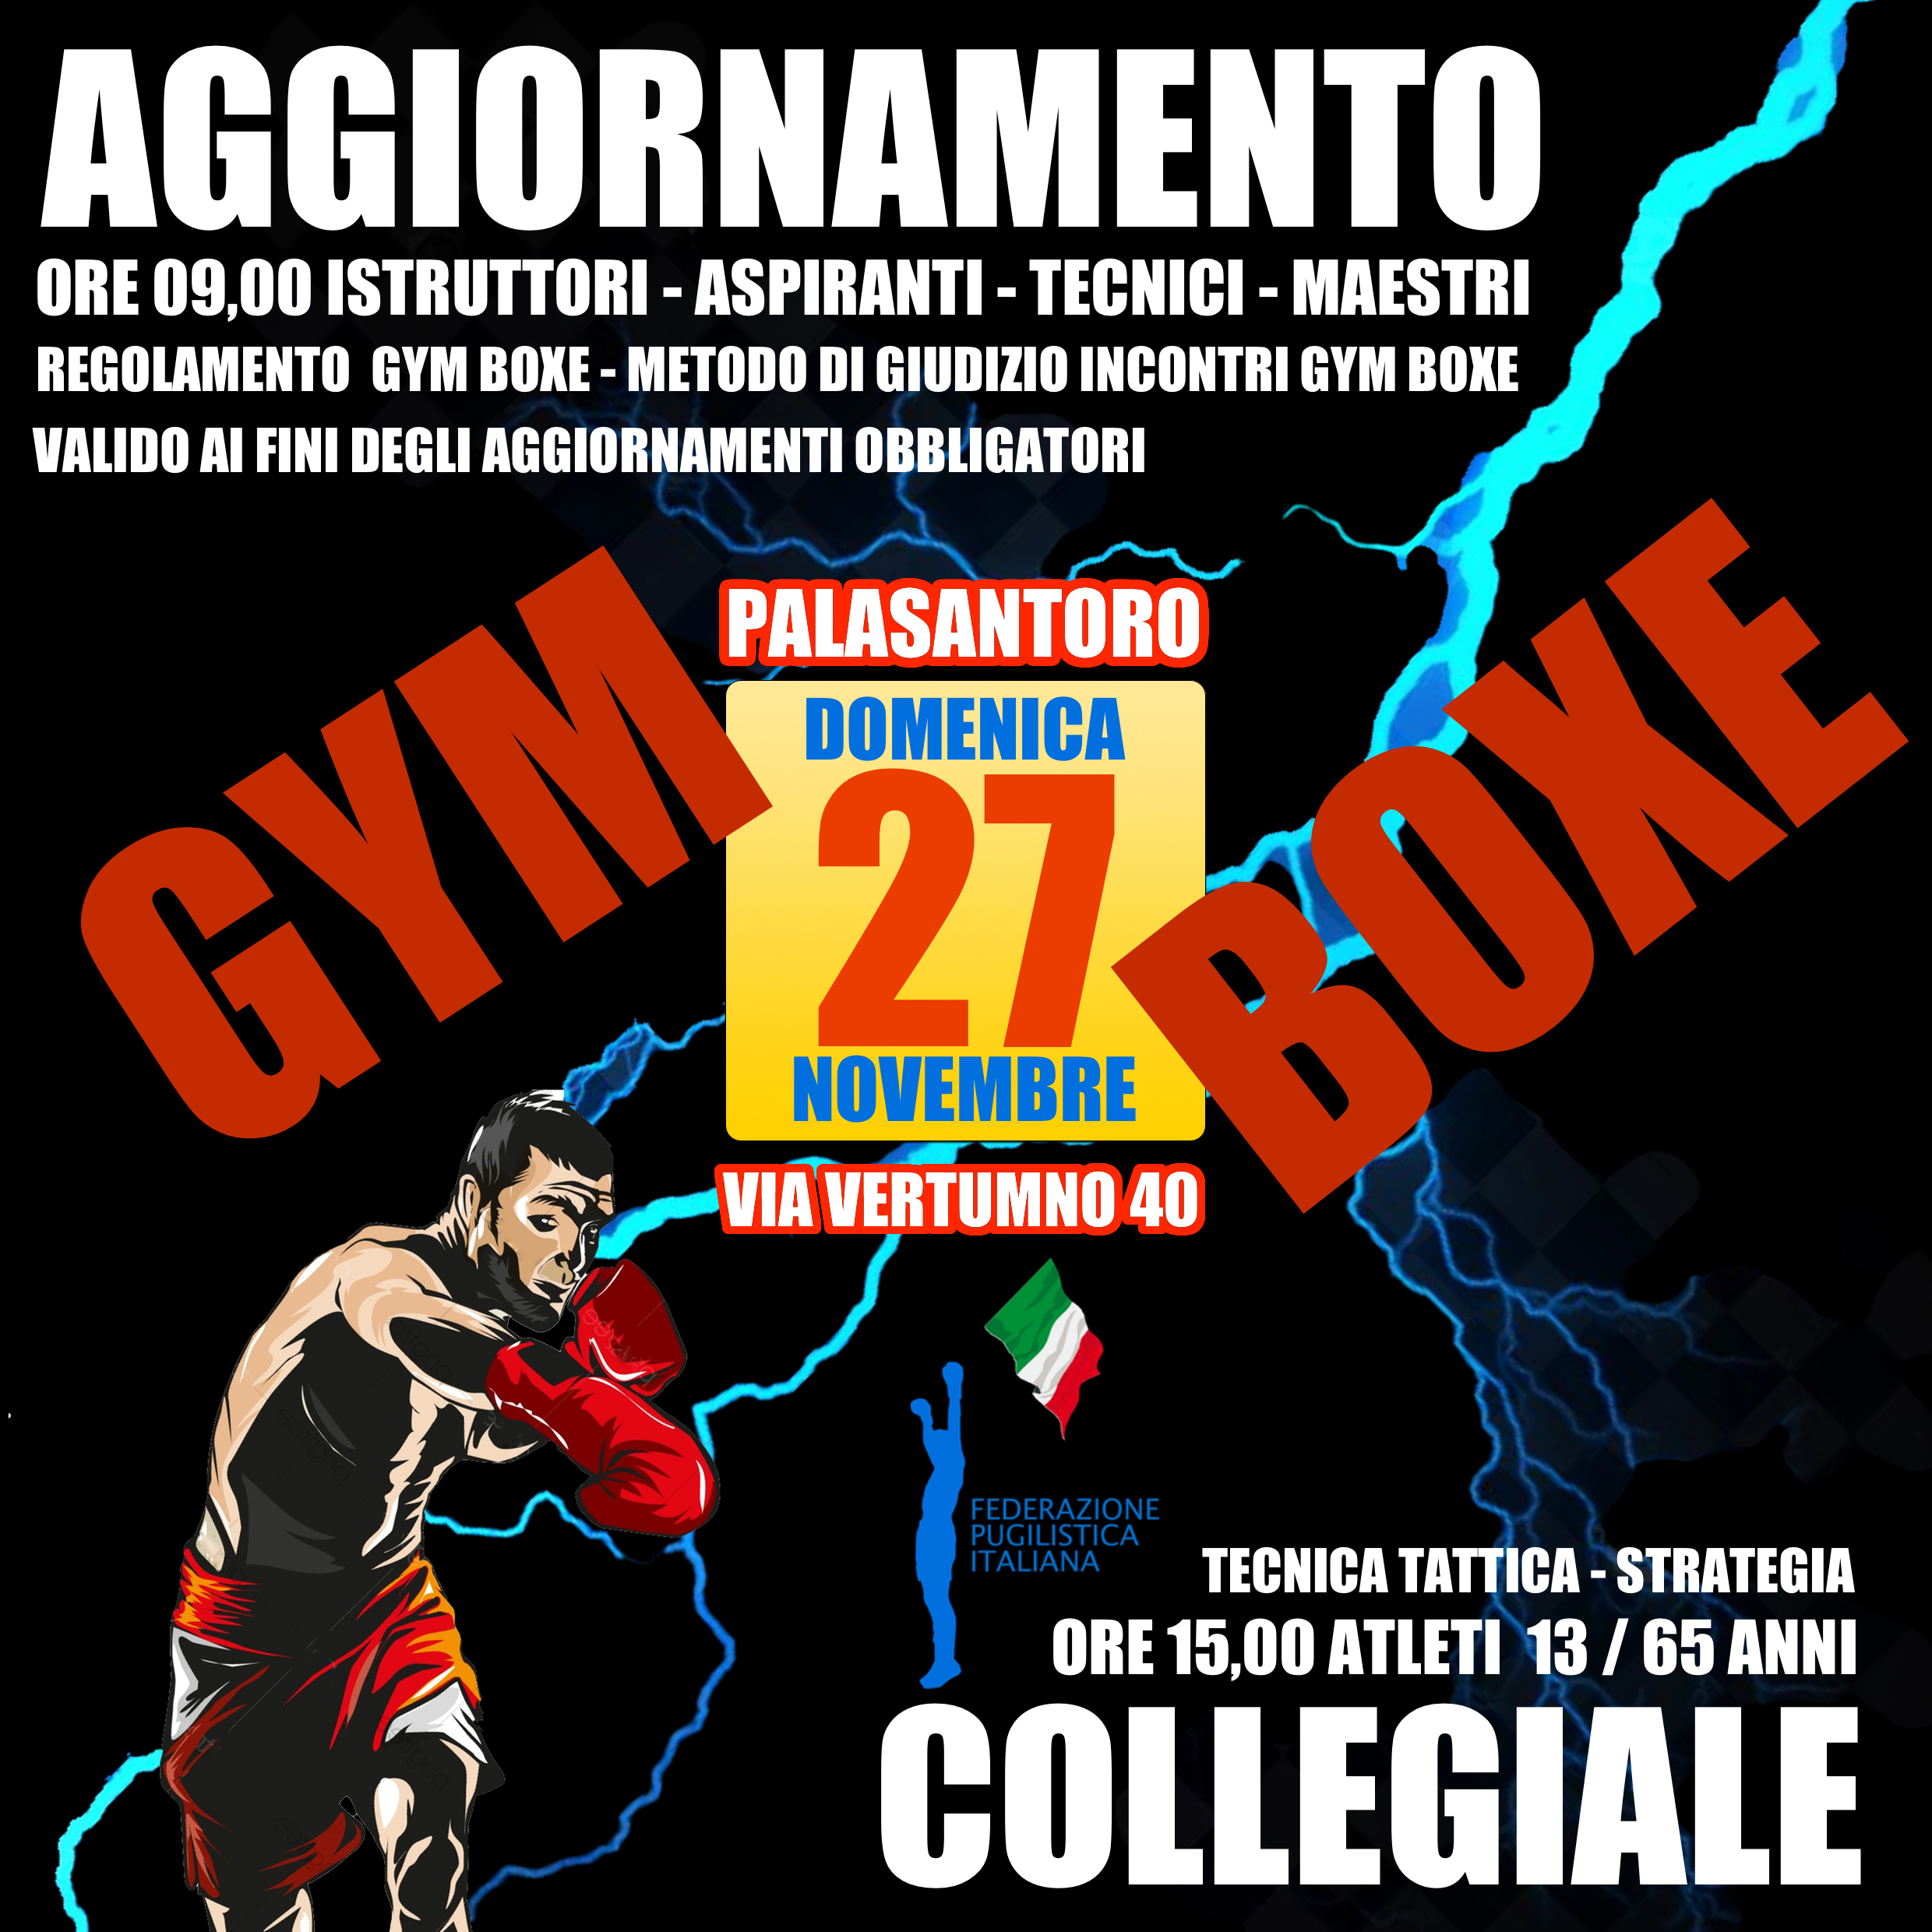 Il 27 novembre al PalaSantoro di Roma un Corso di Aggiornamento e Collegiale di Gym Boxe 